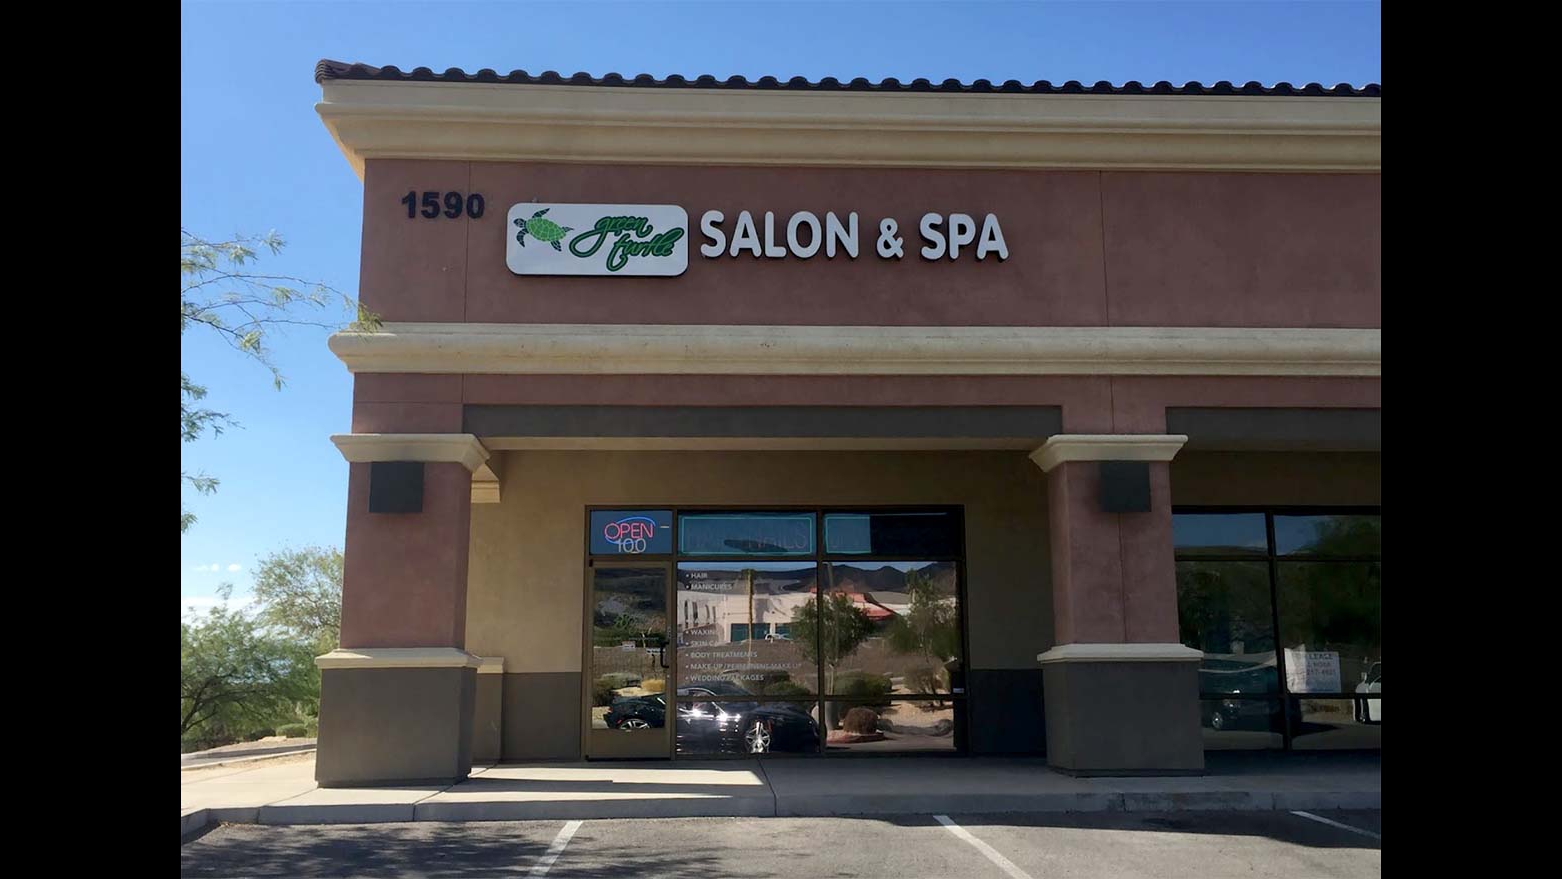 Green Turtle Salon & Spa